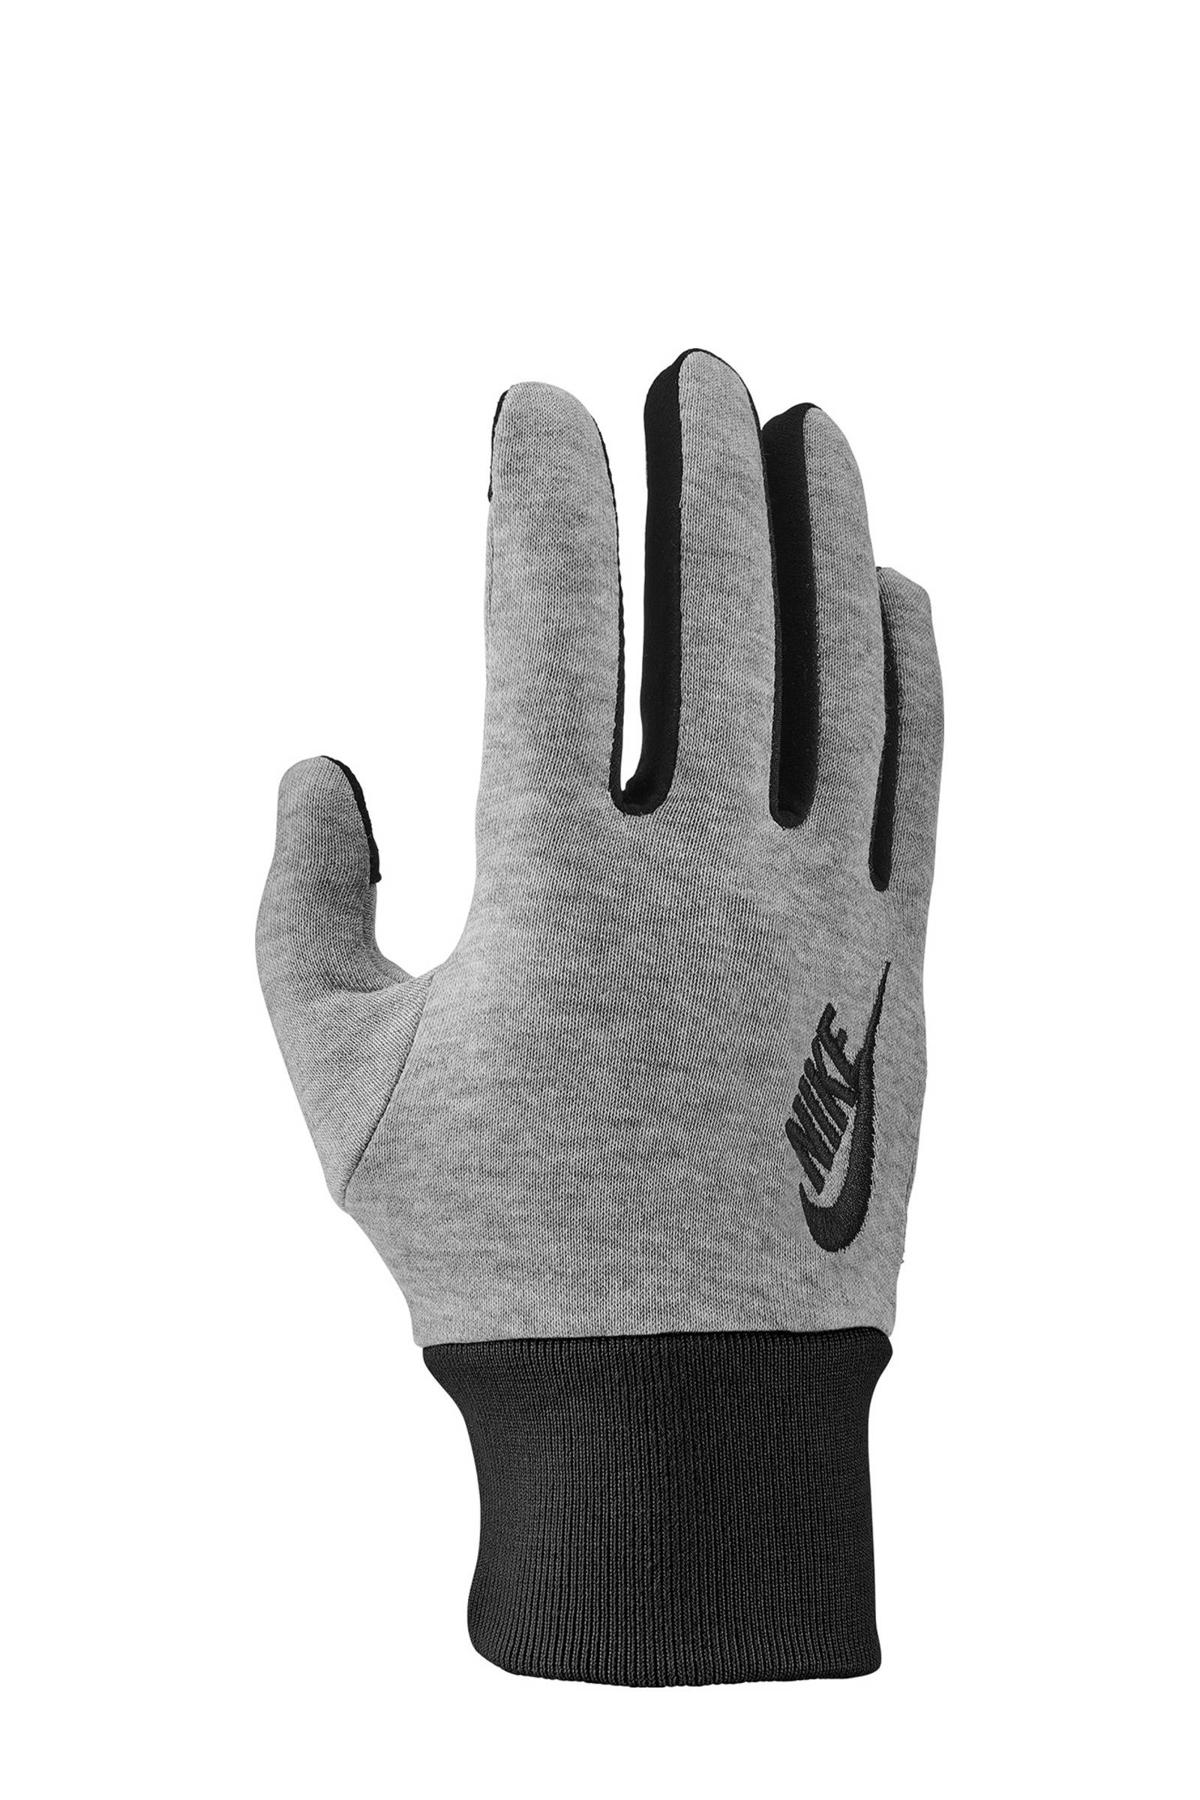 Nike handschoenen grijs/zwart